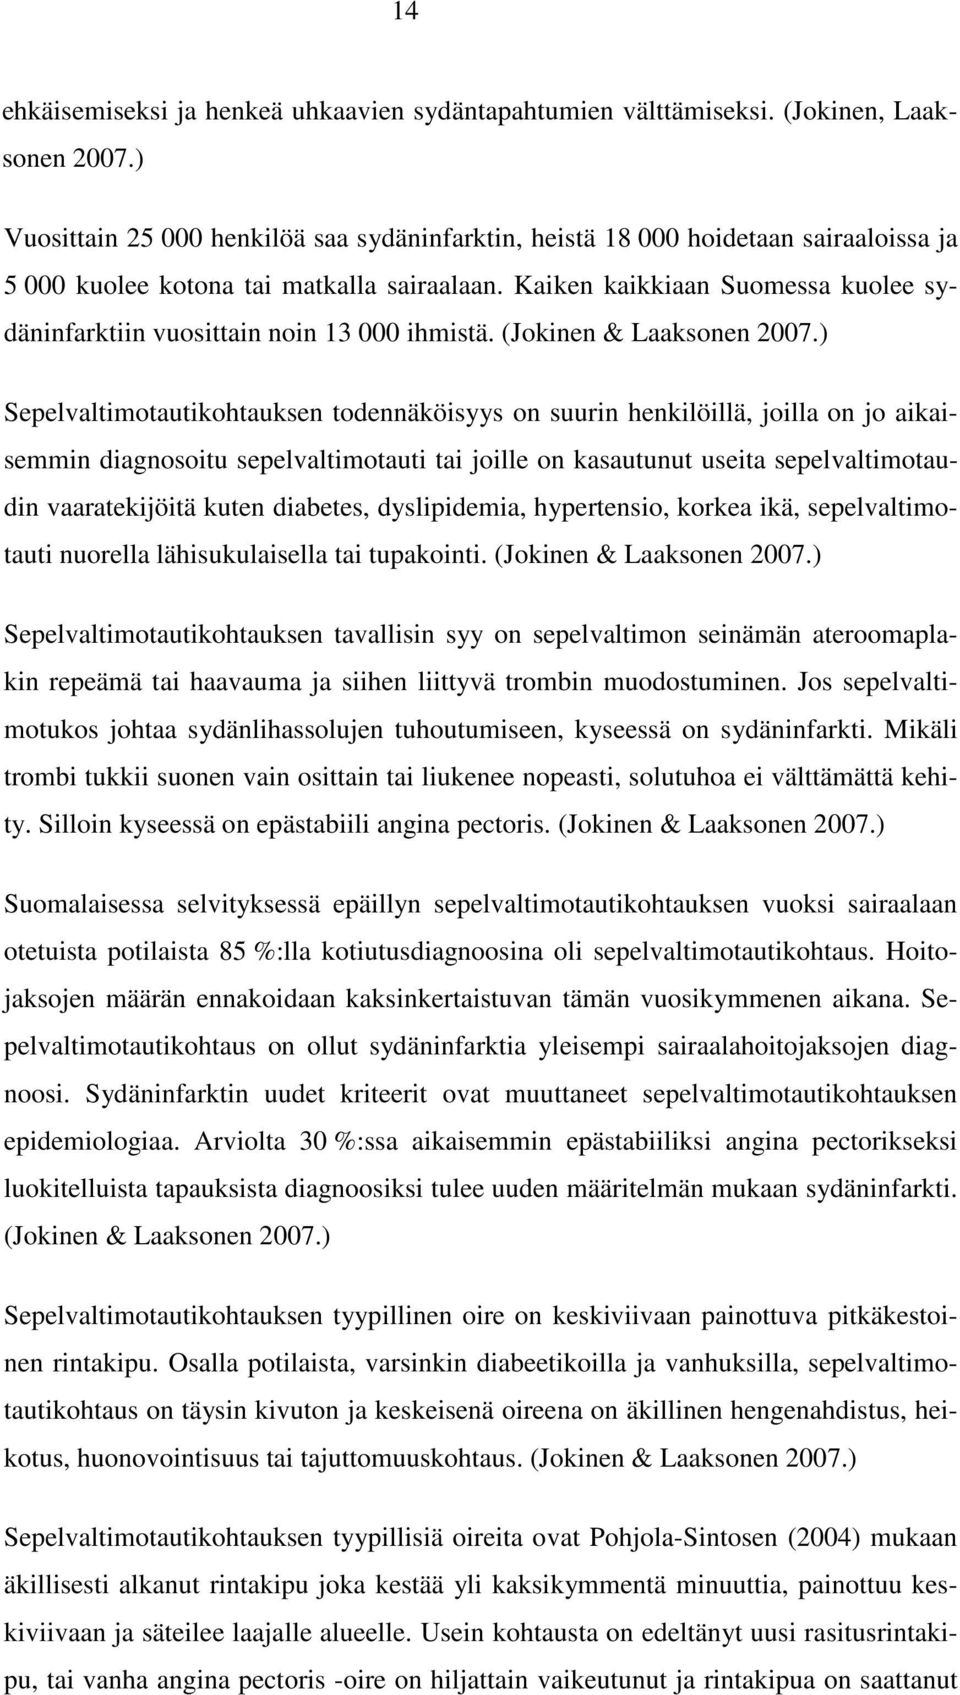 Kaiken kaikkiaan Suomessa kuolee sydäninfarktiin vuosittain noin 13 000 ihmistä. (Jokinen & Laaksonen 2007.